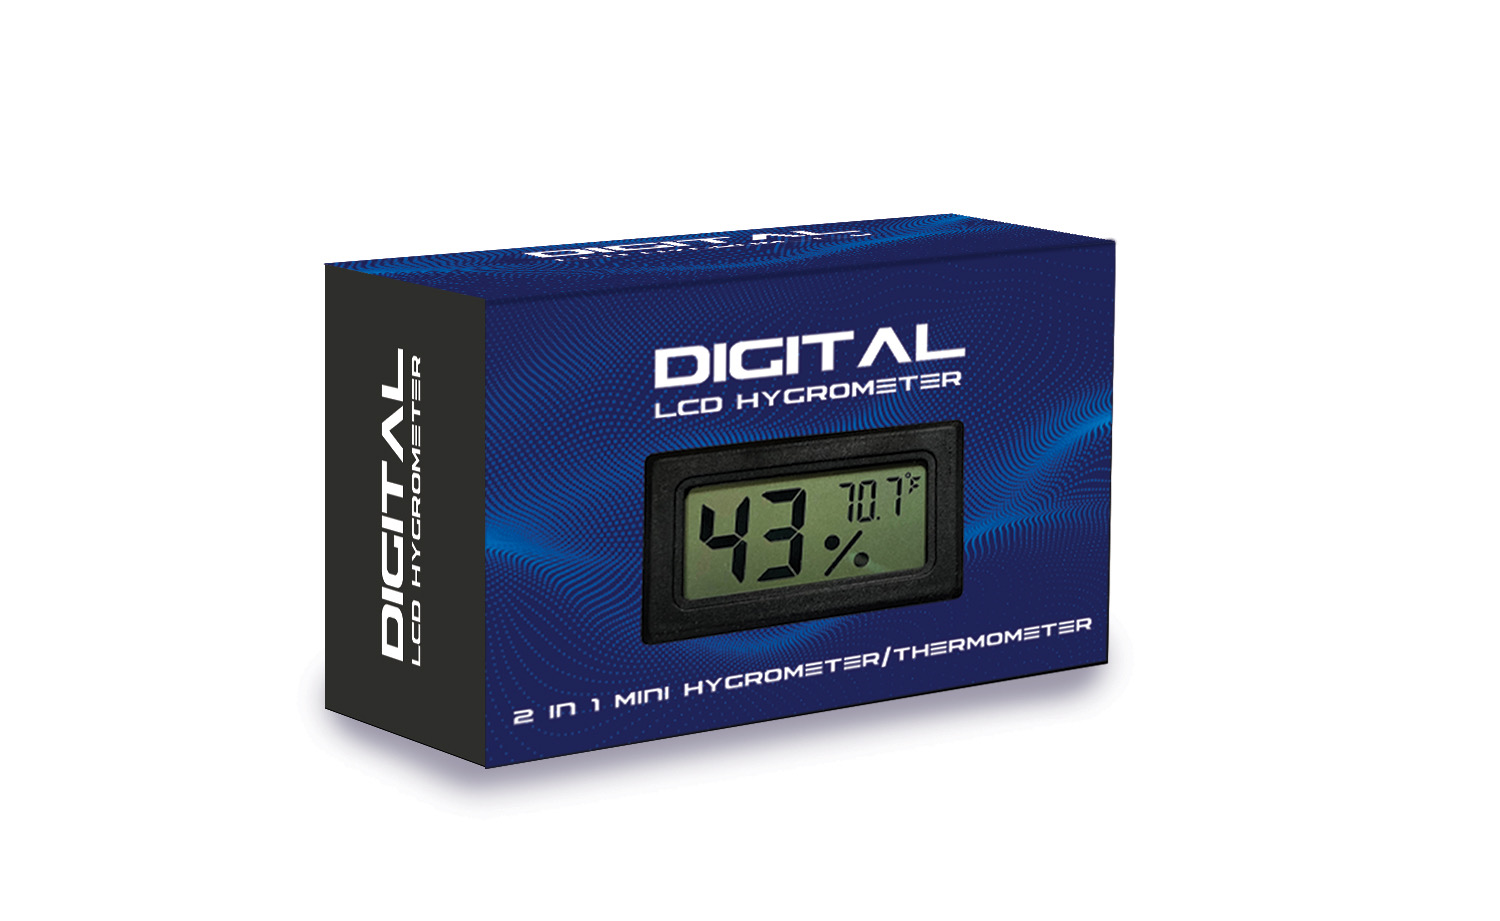 DOQAUS Digital Hygrometer Black Bundle with Digital Hygrometer Grey Save More Than $3 